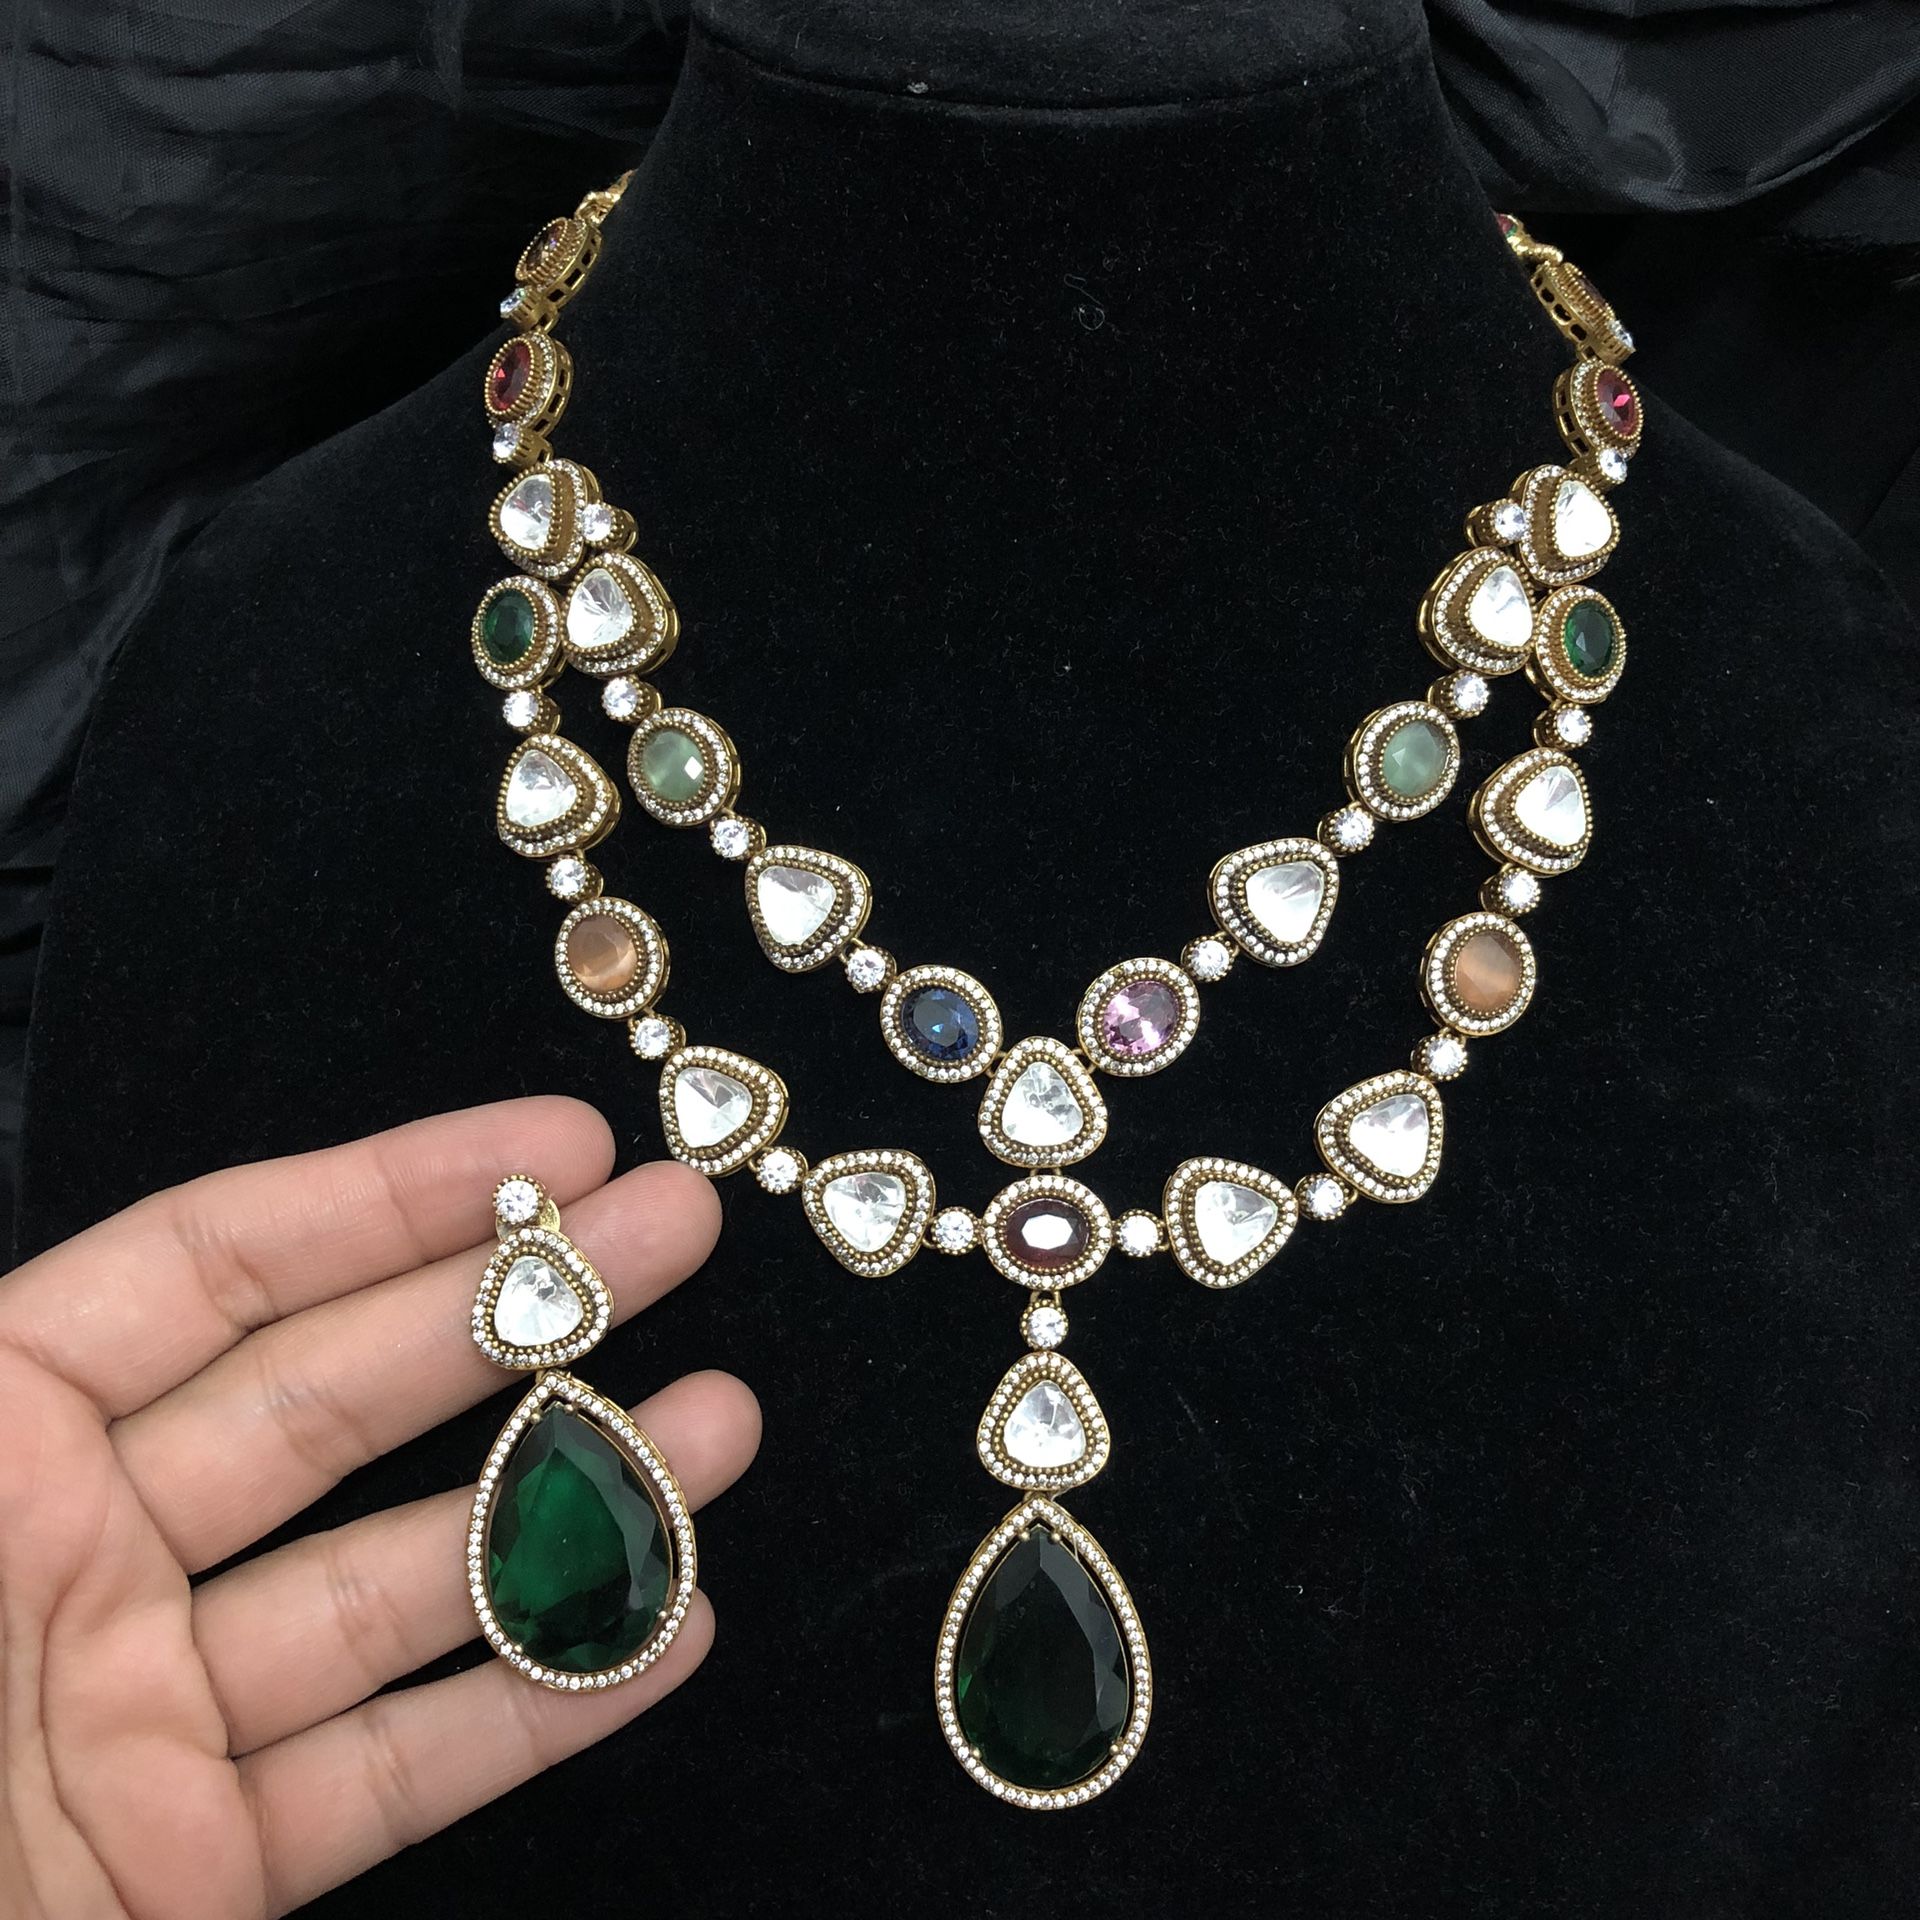 Mangatrai Masonite Choker Premium Quality Indian Mala Double Layer Necklace Jewelry Indian Pakistani Pearl Necklace 